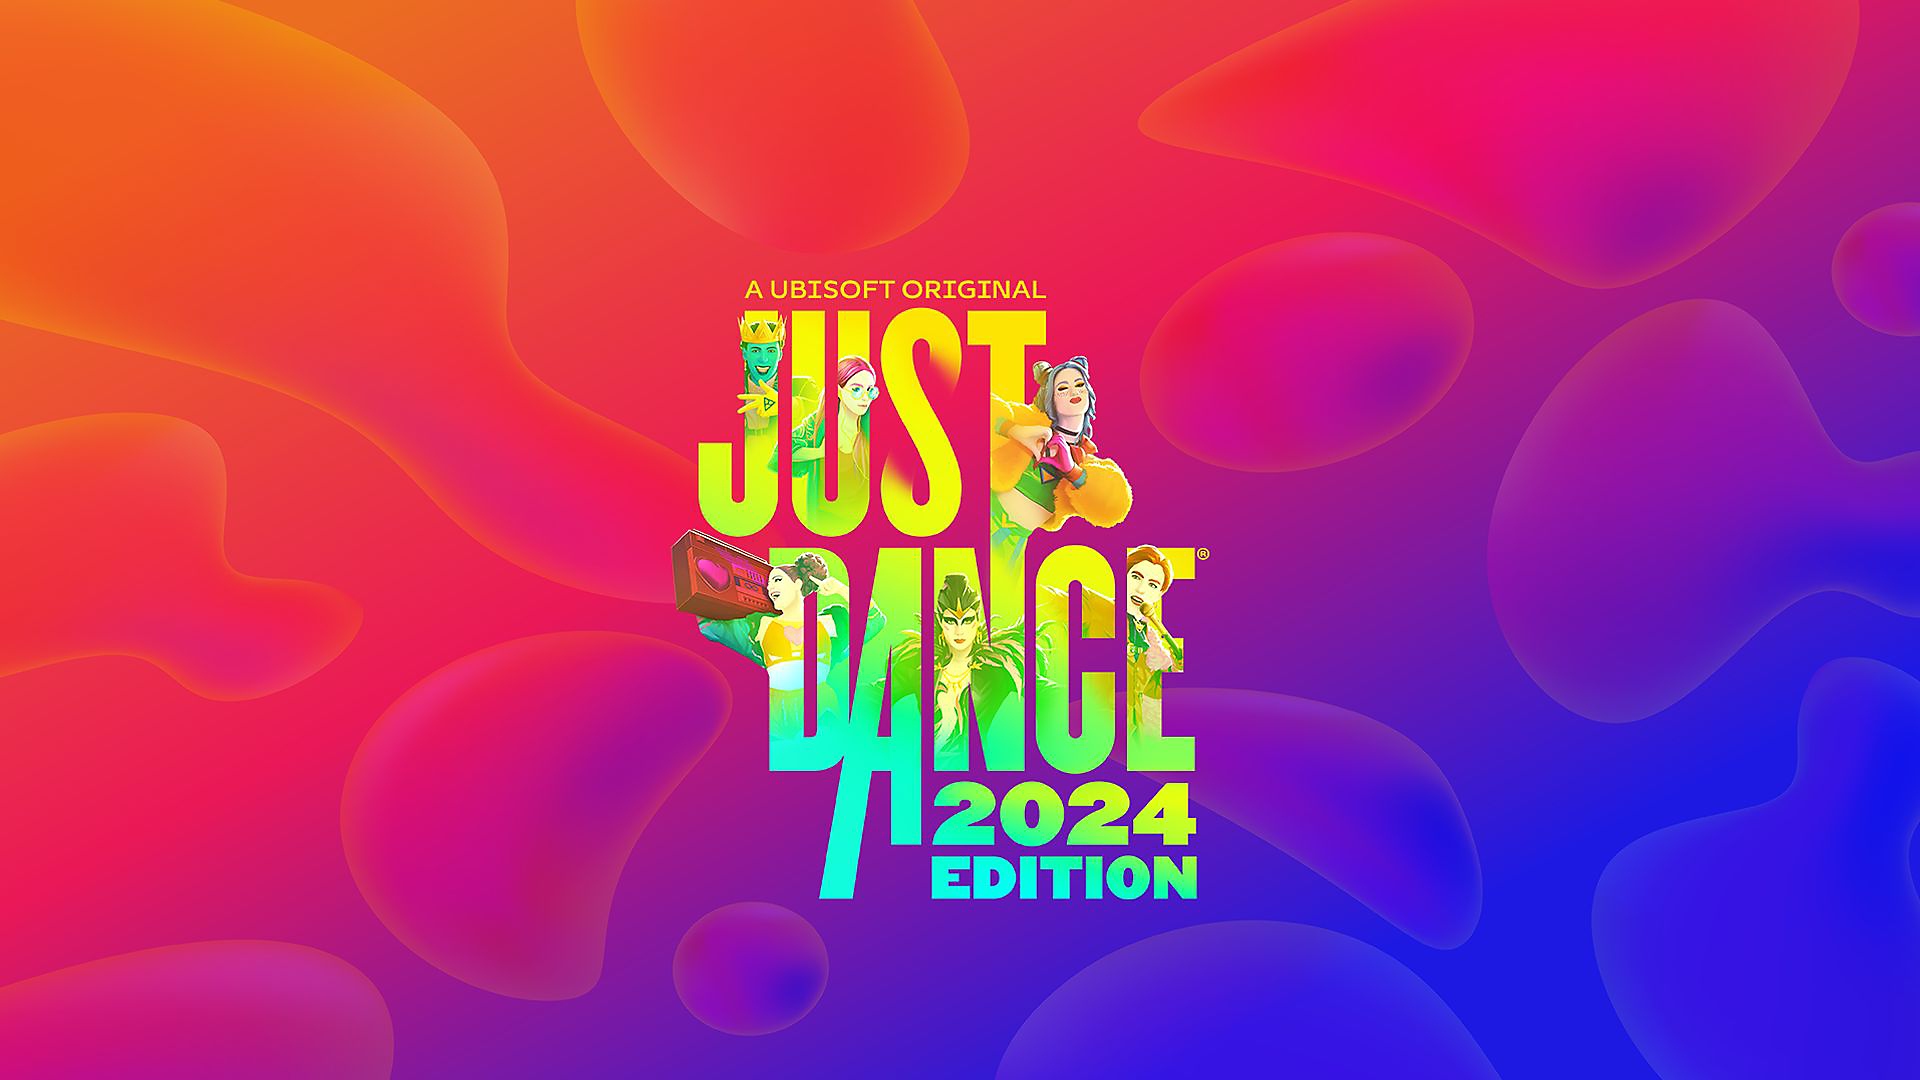 Just Dance 2024 Edition - العرض التشويقي لتجربة اللعب